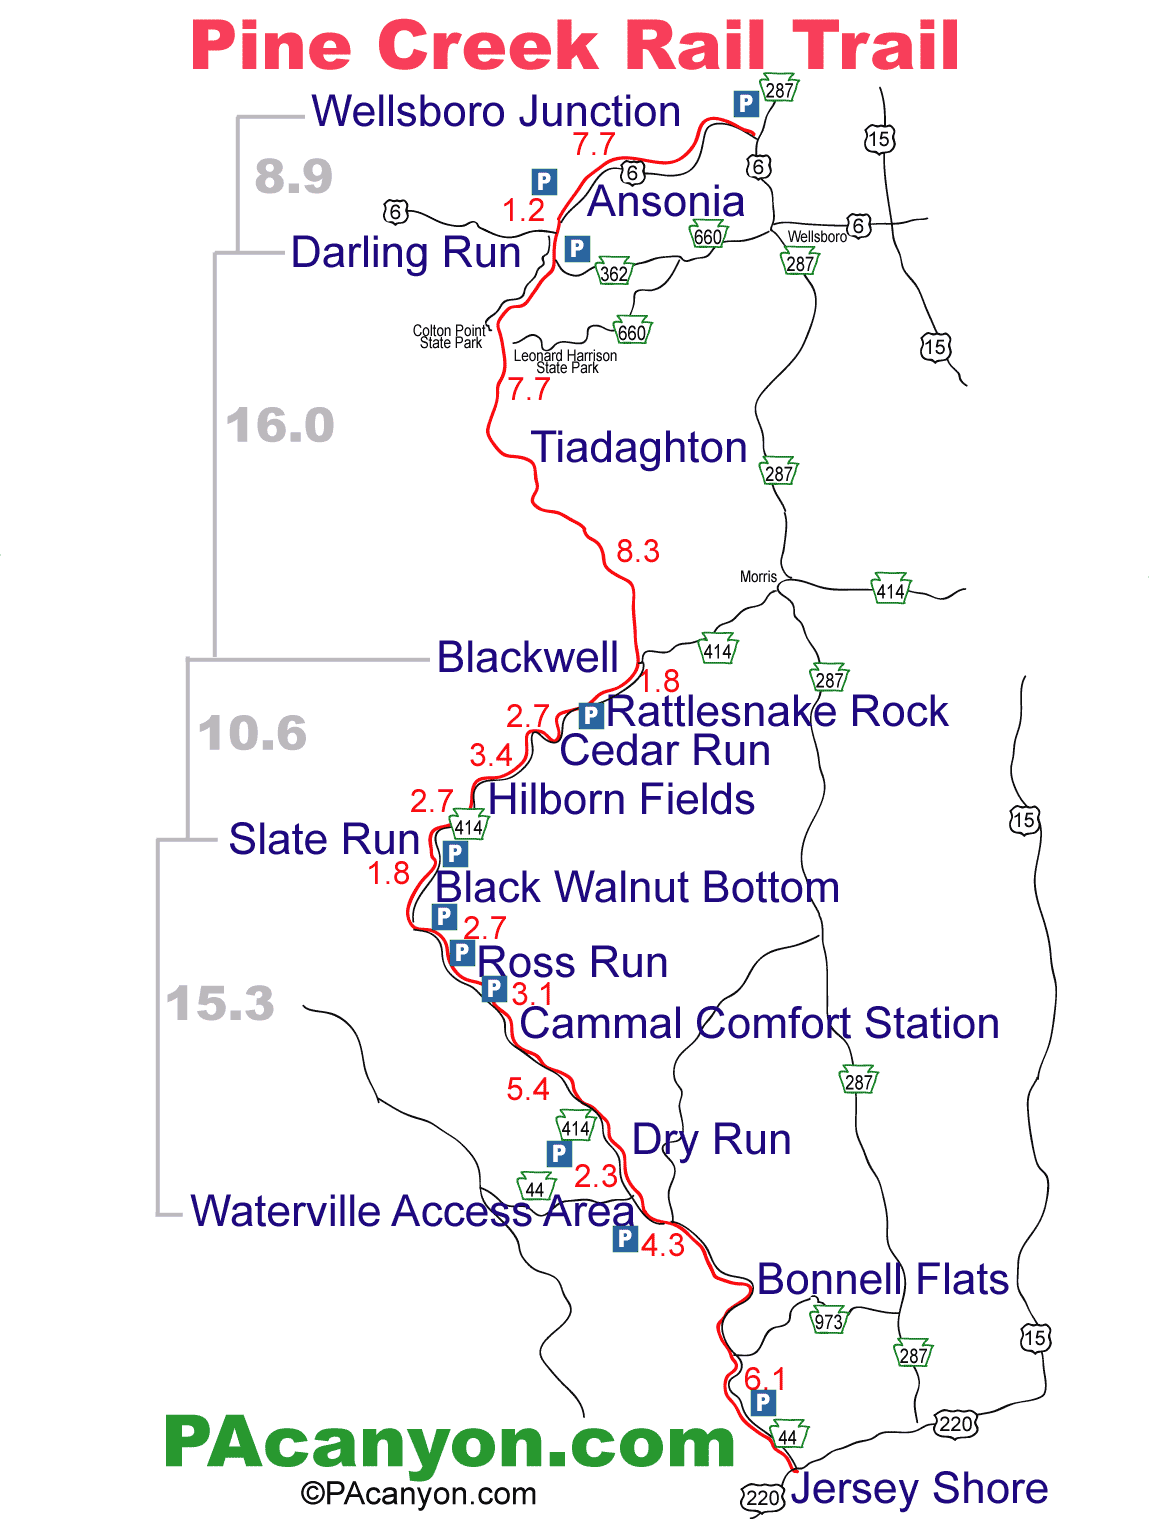 Pine Creek Rail Trail Map